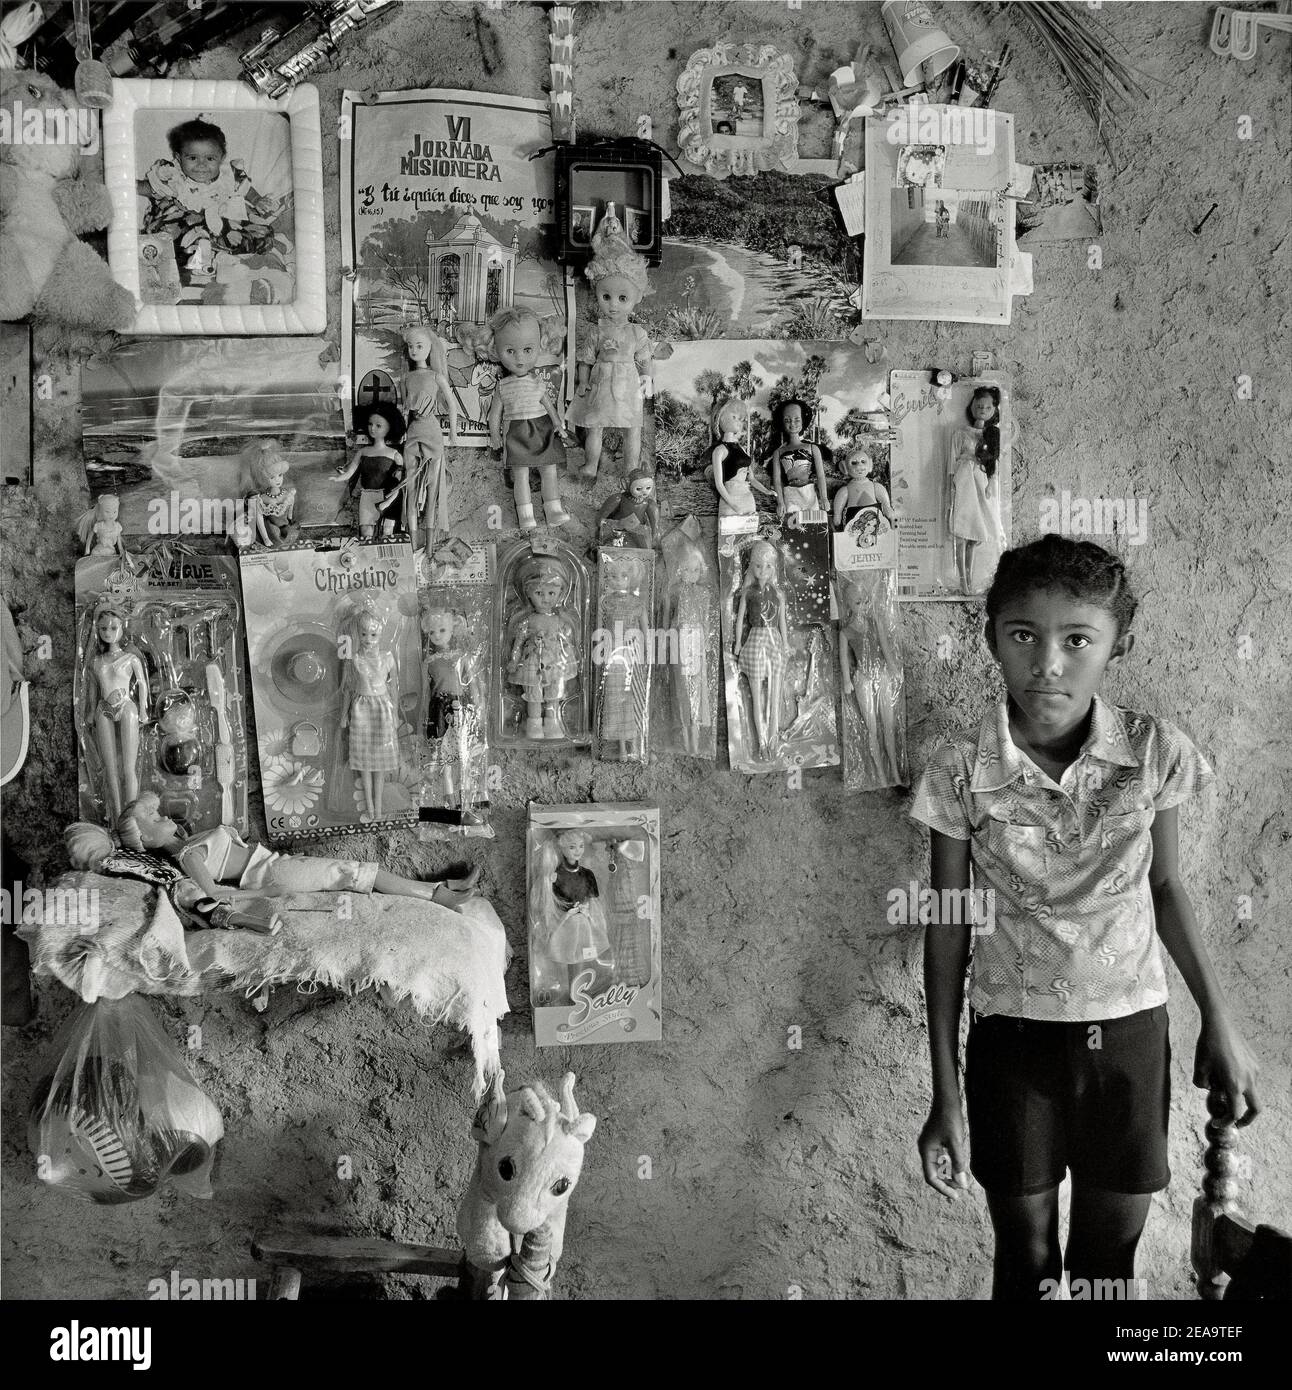 Mini Puppen Sachen hängen die Schlamm-Mauer; Bhuj; Kutch; Gujarat; Indien  Stockfotografie - Alamy